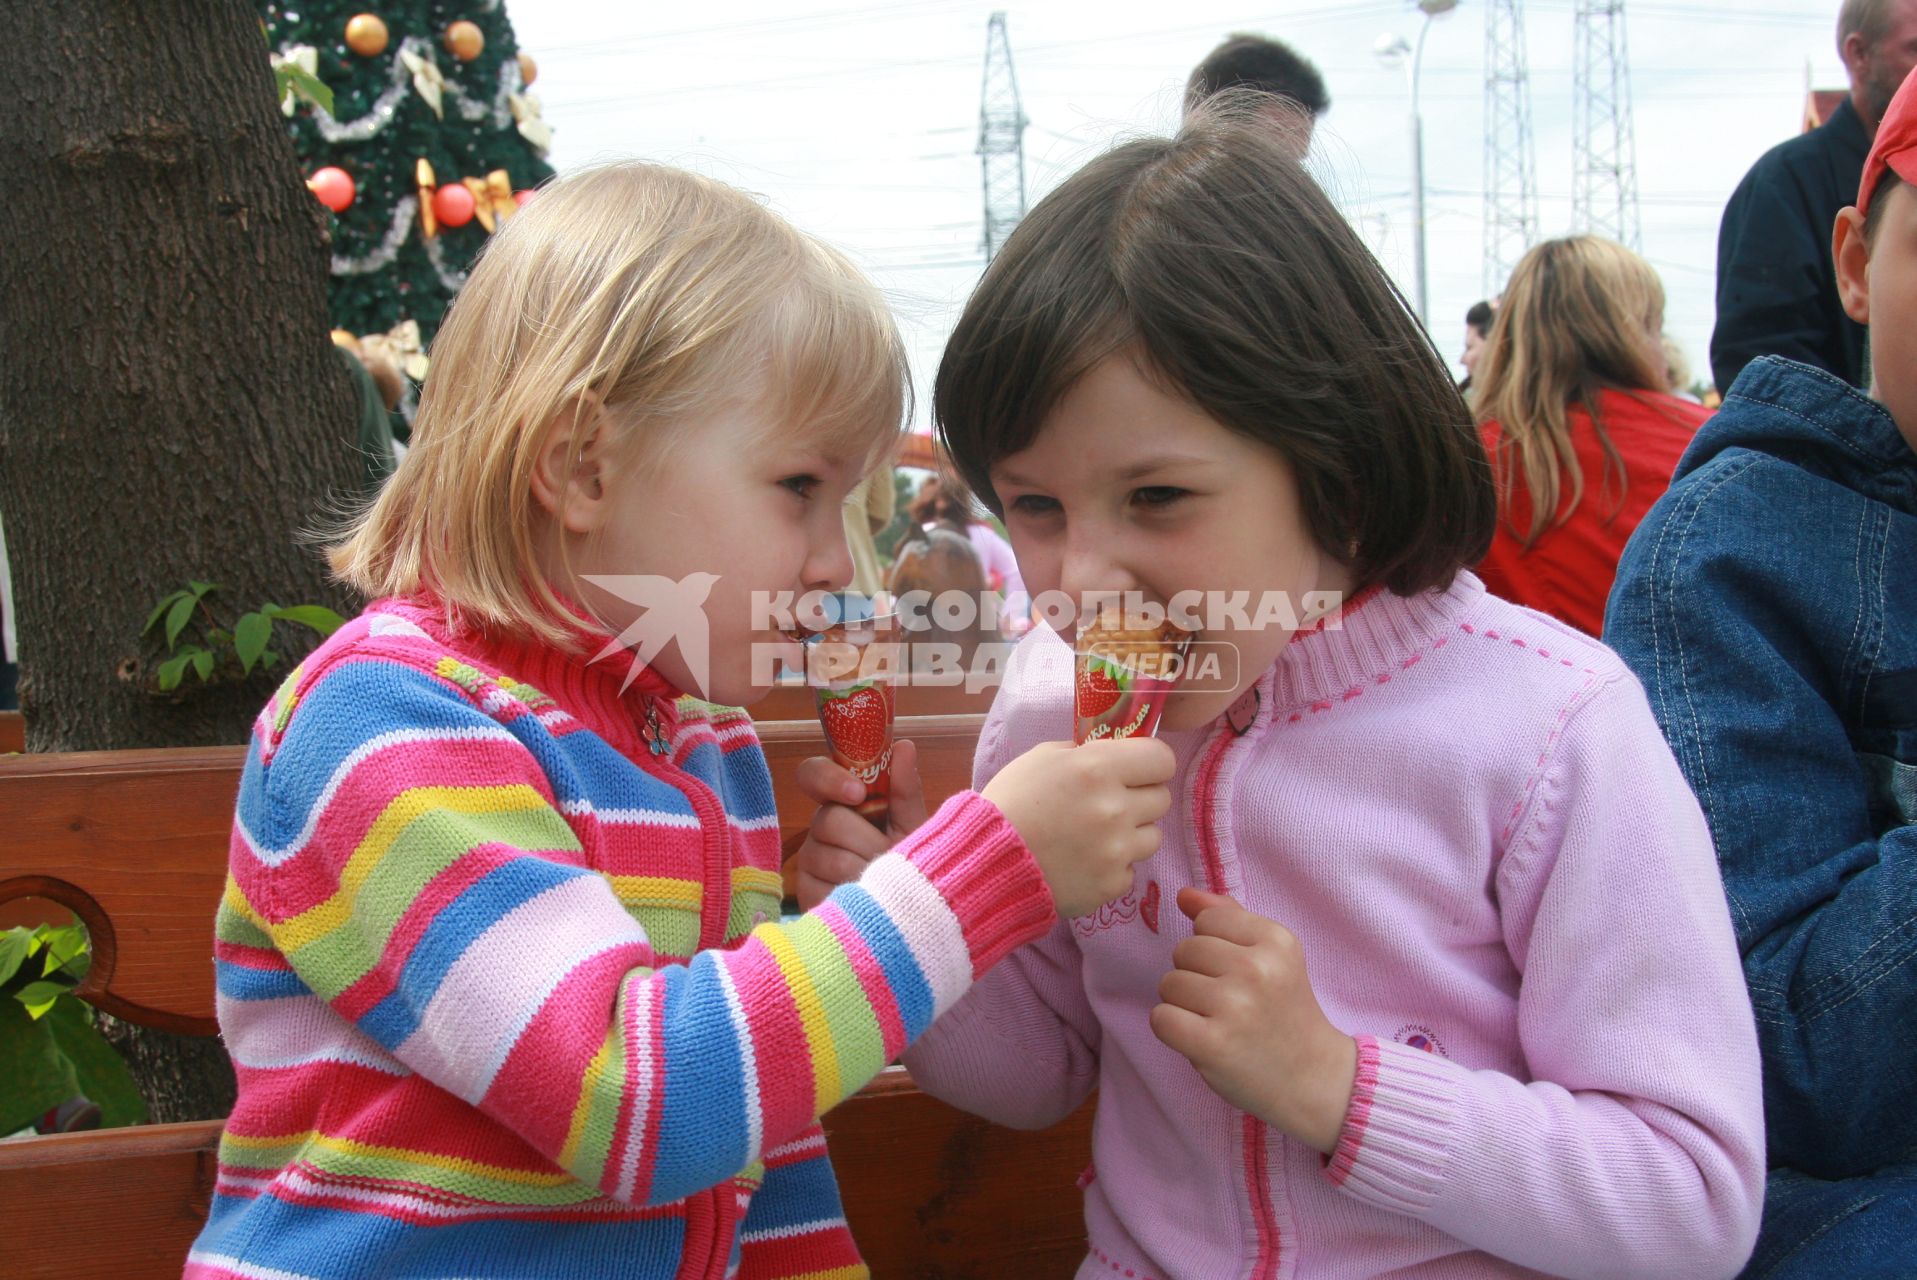 Традиционный фестиваль мороженого в парке `Сокольники`. На снимке: девочки едят мороженое.